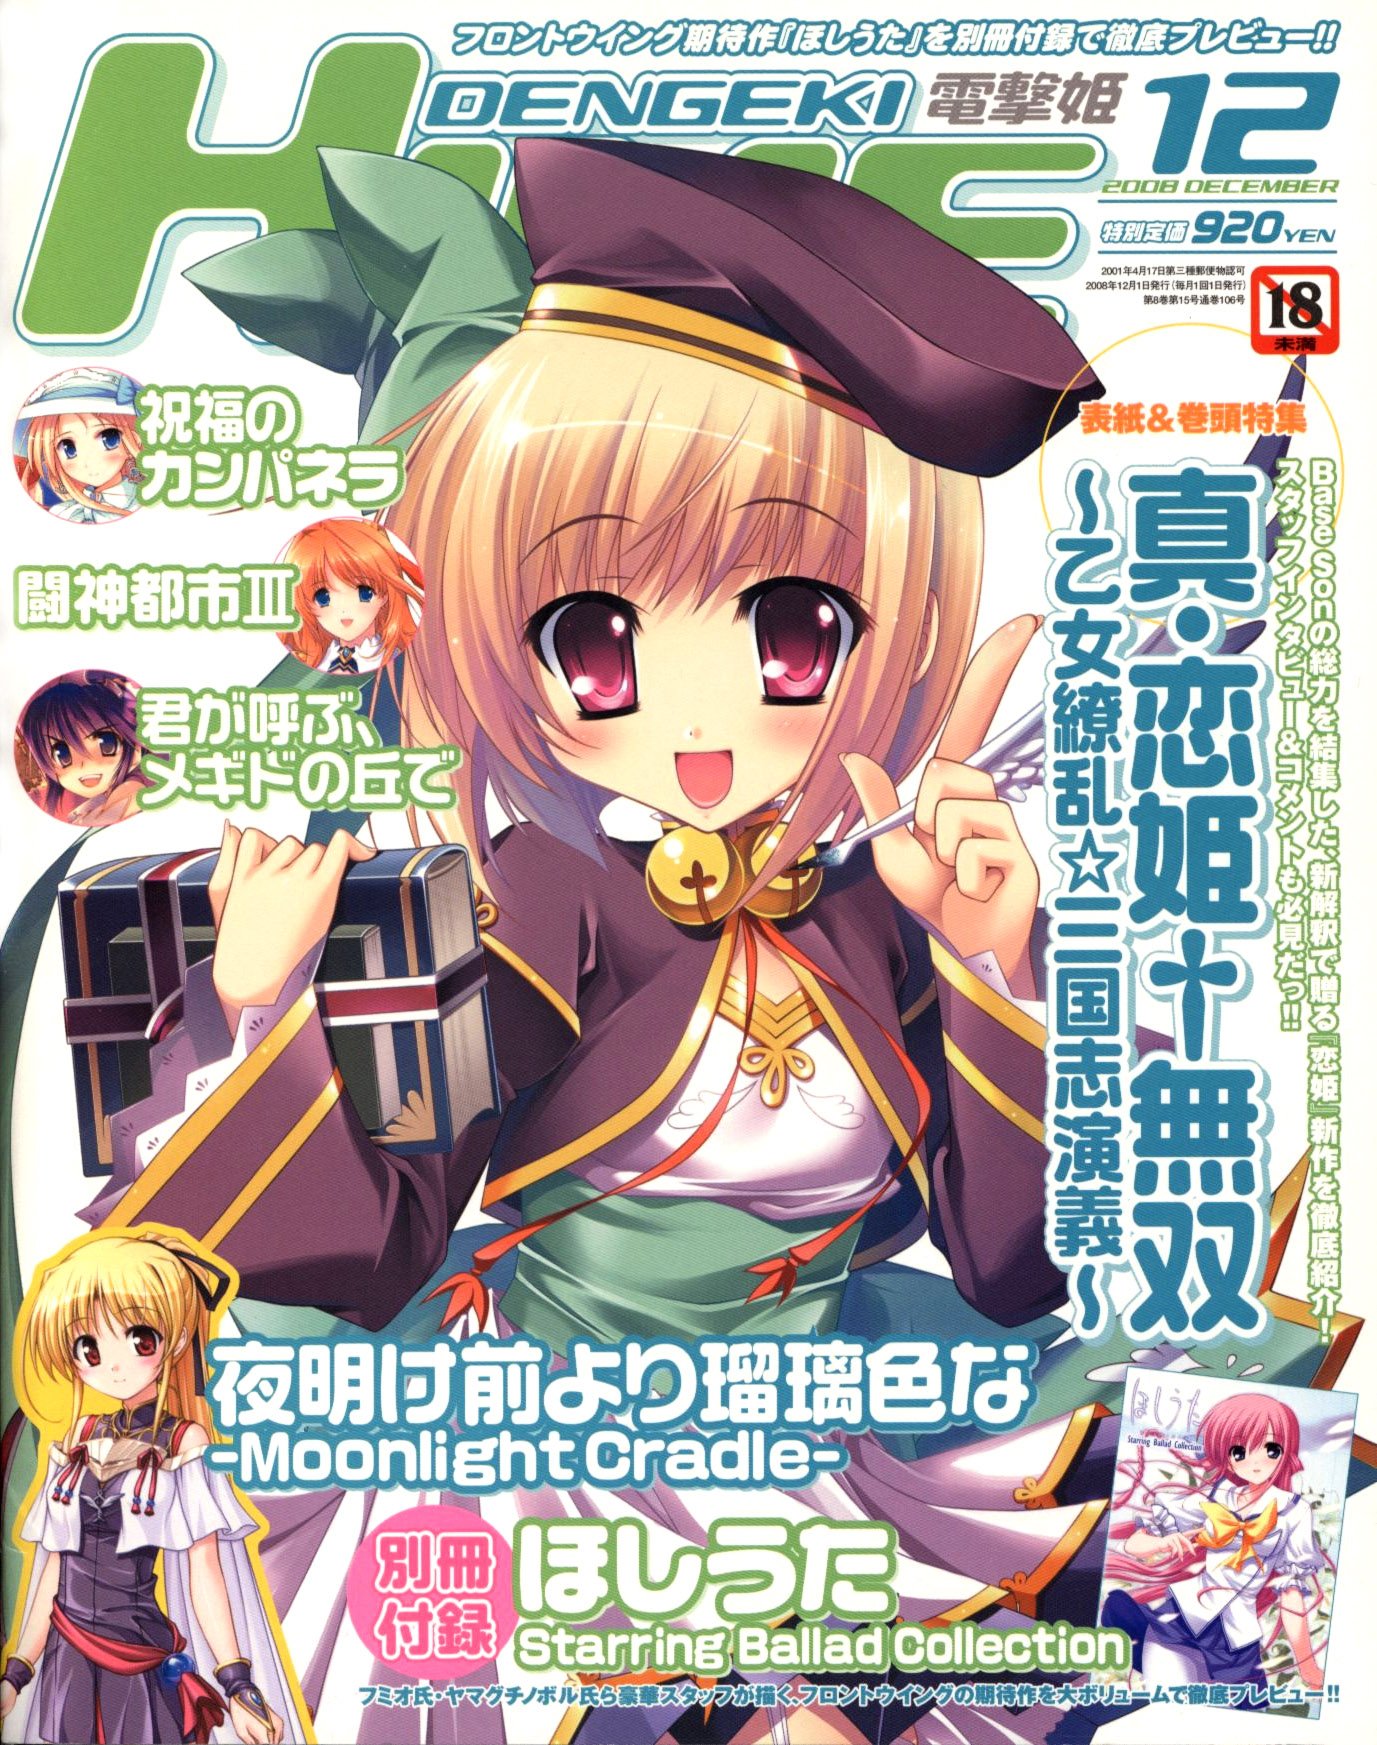 Dengeki Hime Issue 105 (December 2008)